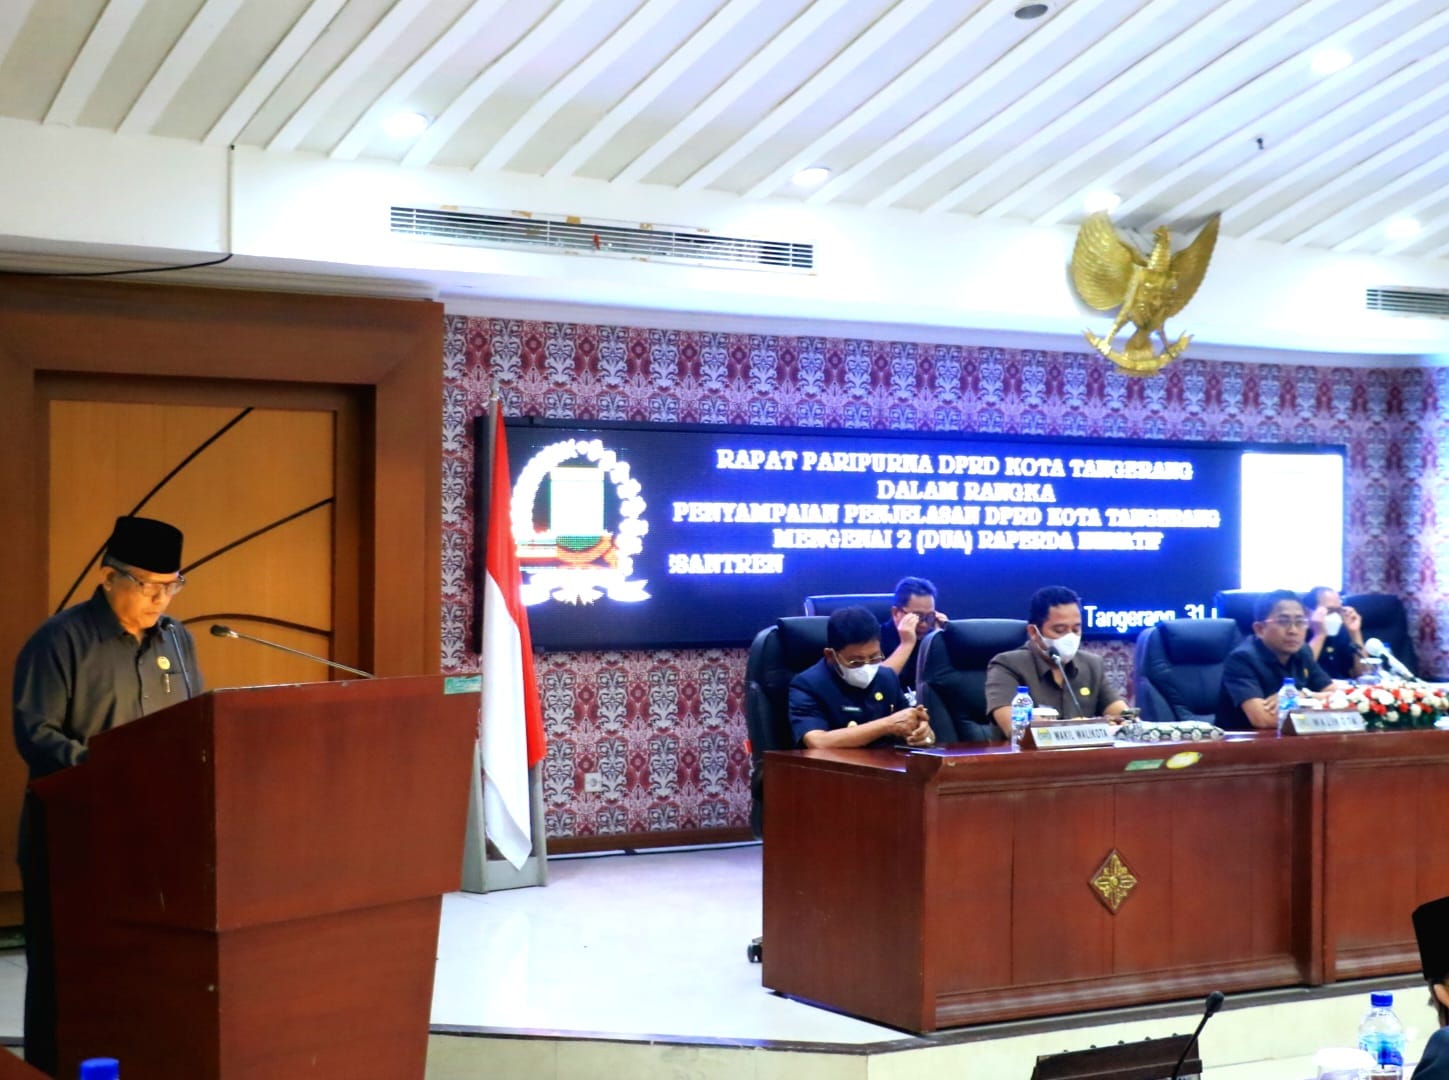 Mengikuti Rapat Paripurna DPRD Kota Tangerang Dalam Rangka Penyampaian Penjelasan Mengenai 2 Raperda Interaktif